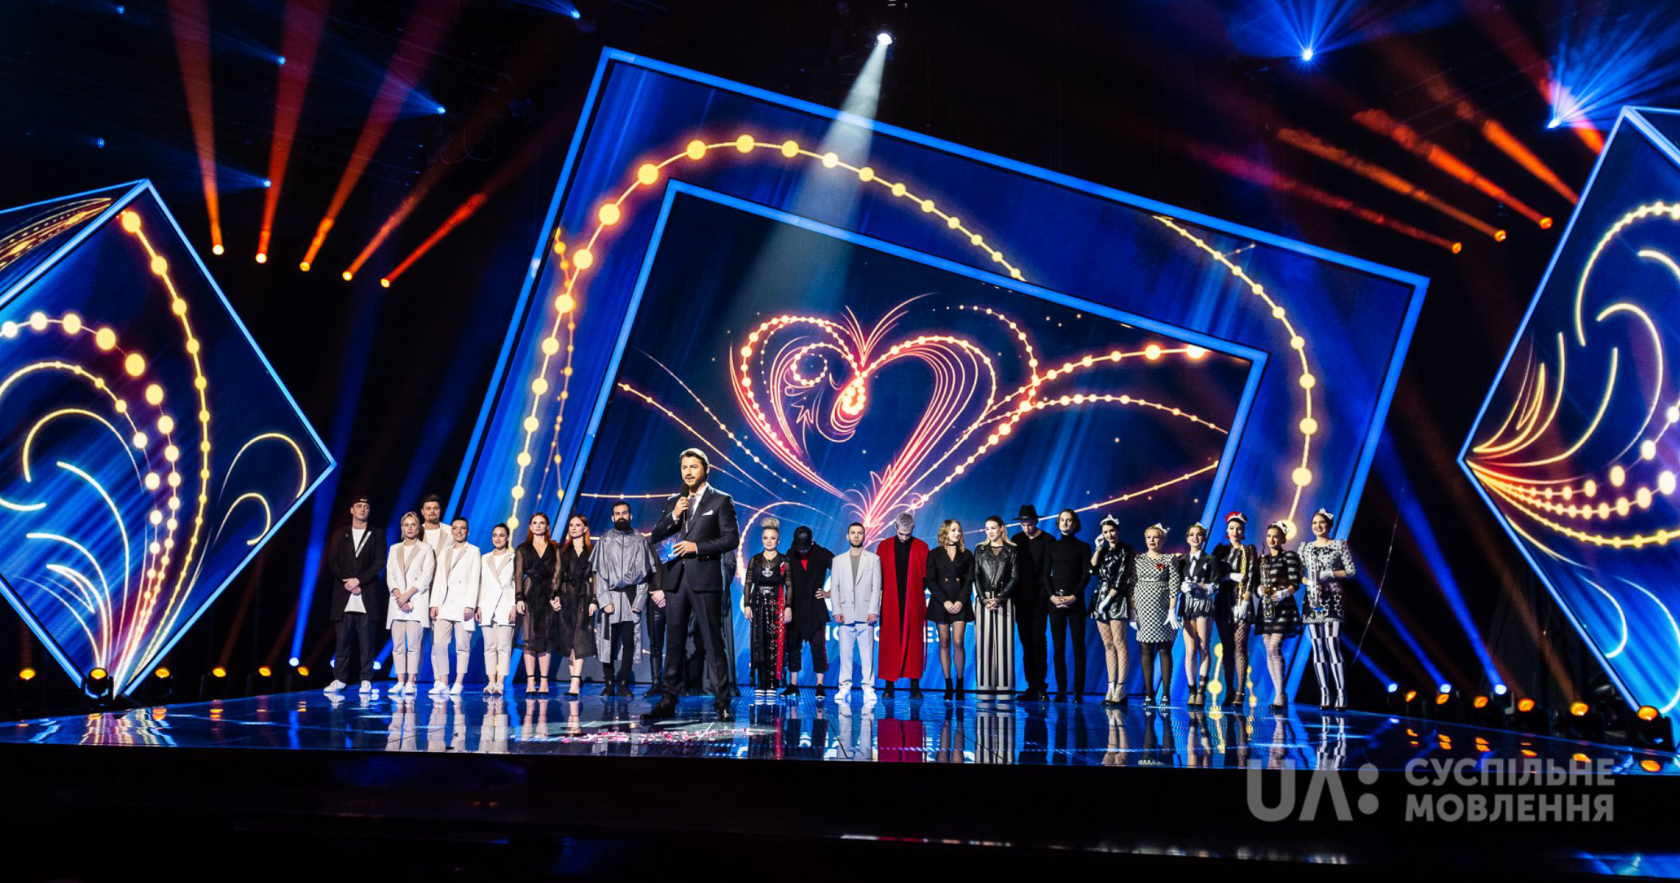 340.000 ευρώ θα κοστίσει στην ΕΡΤ η ελληνική αποστολή για την φετινή Eurovision